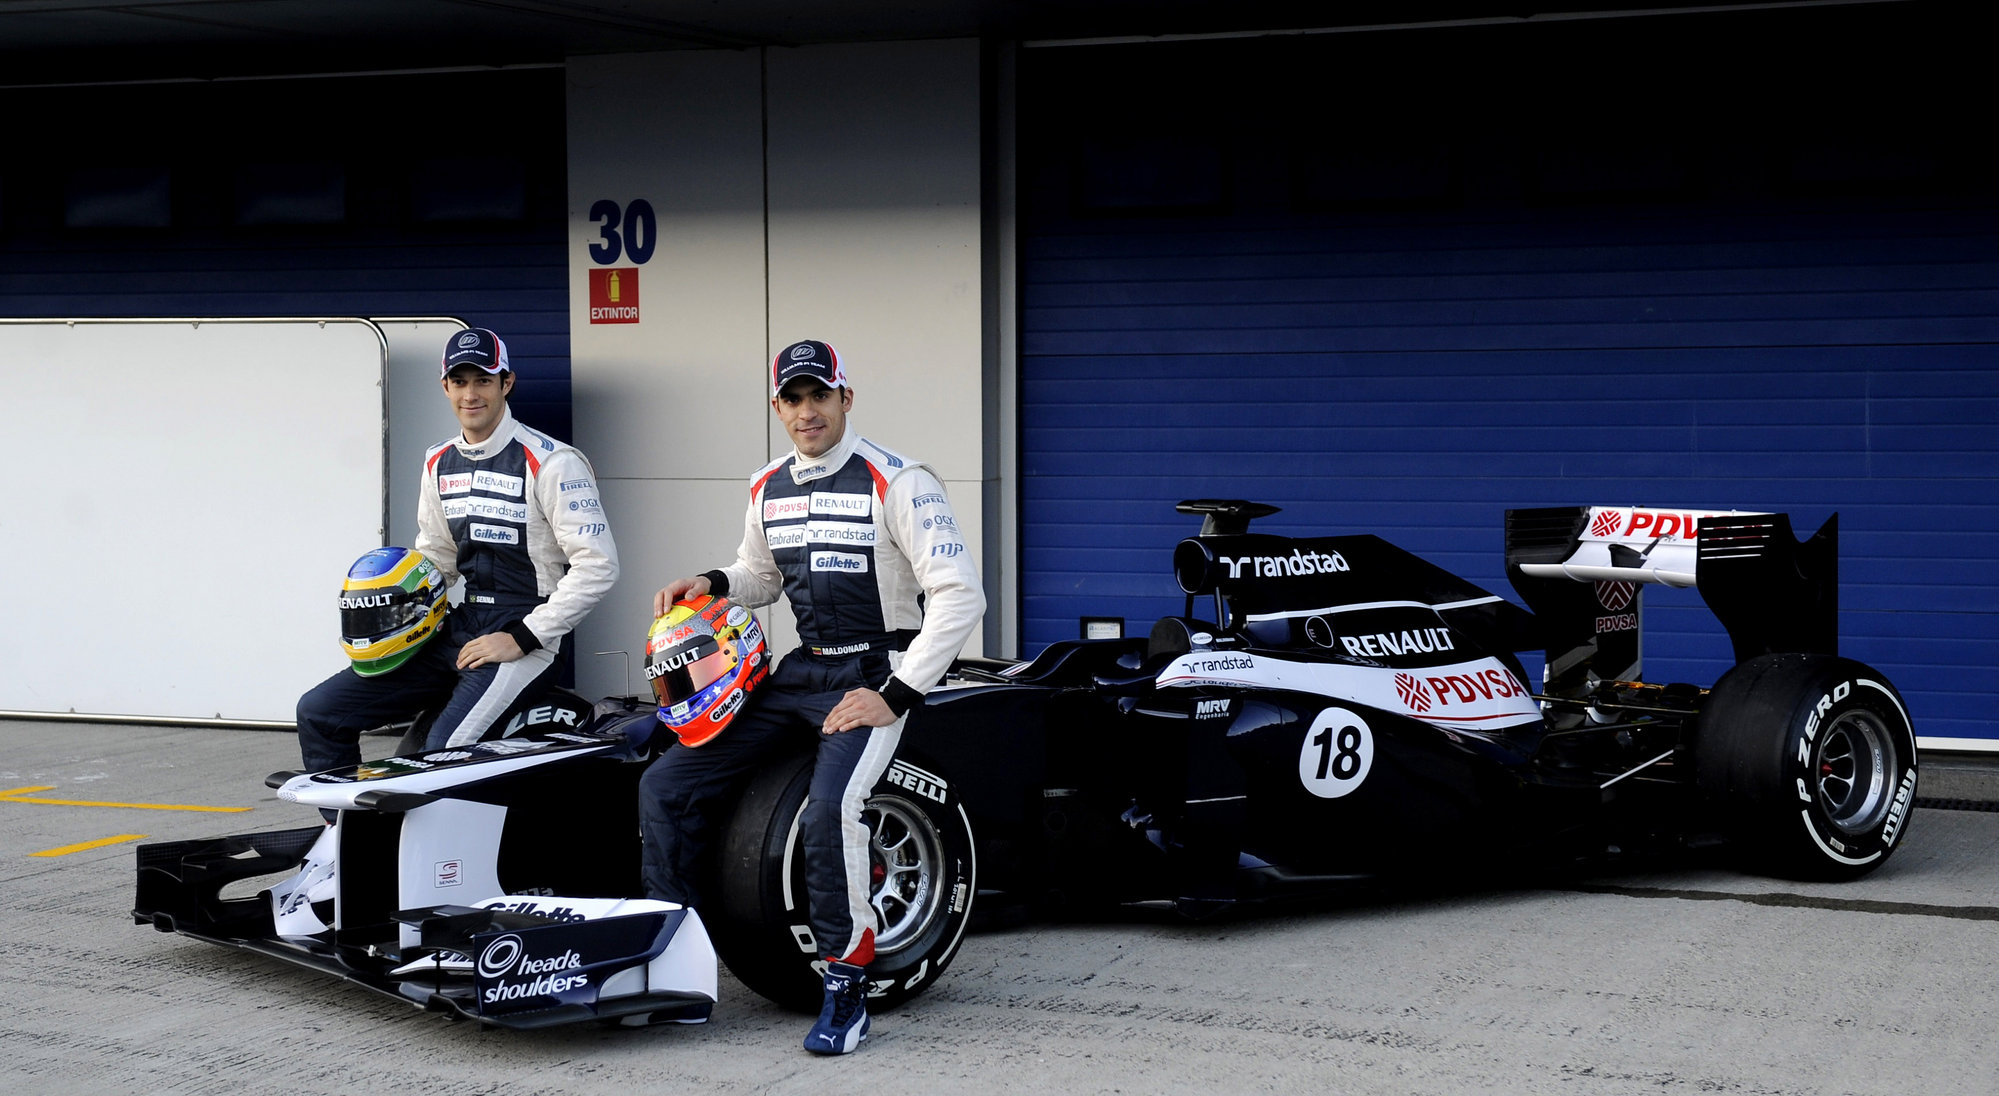 Williams apuesta por Senna y Maldonado para estar lo más arriba posible